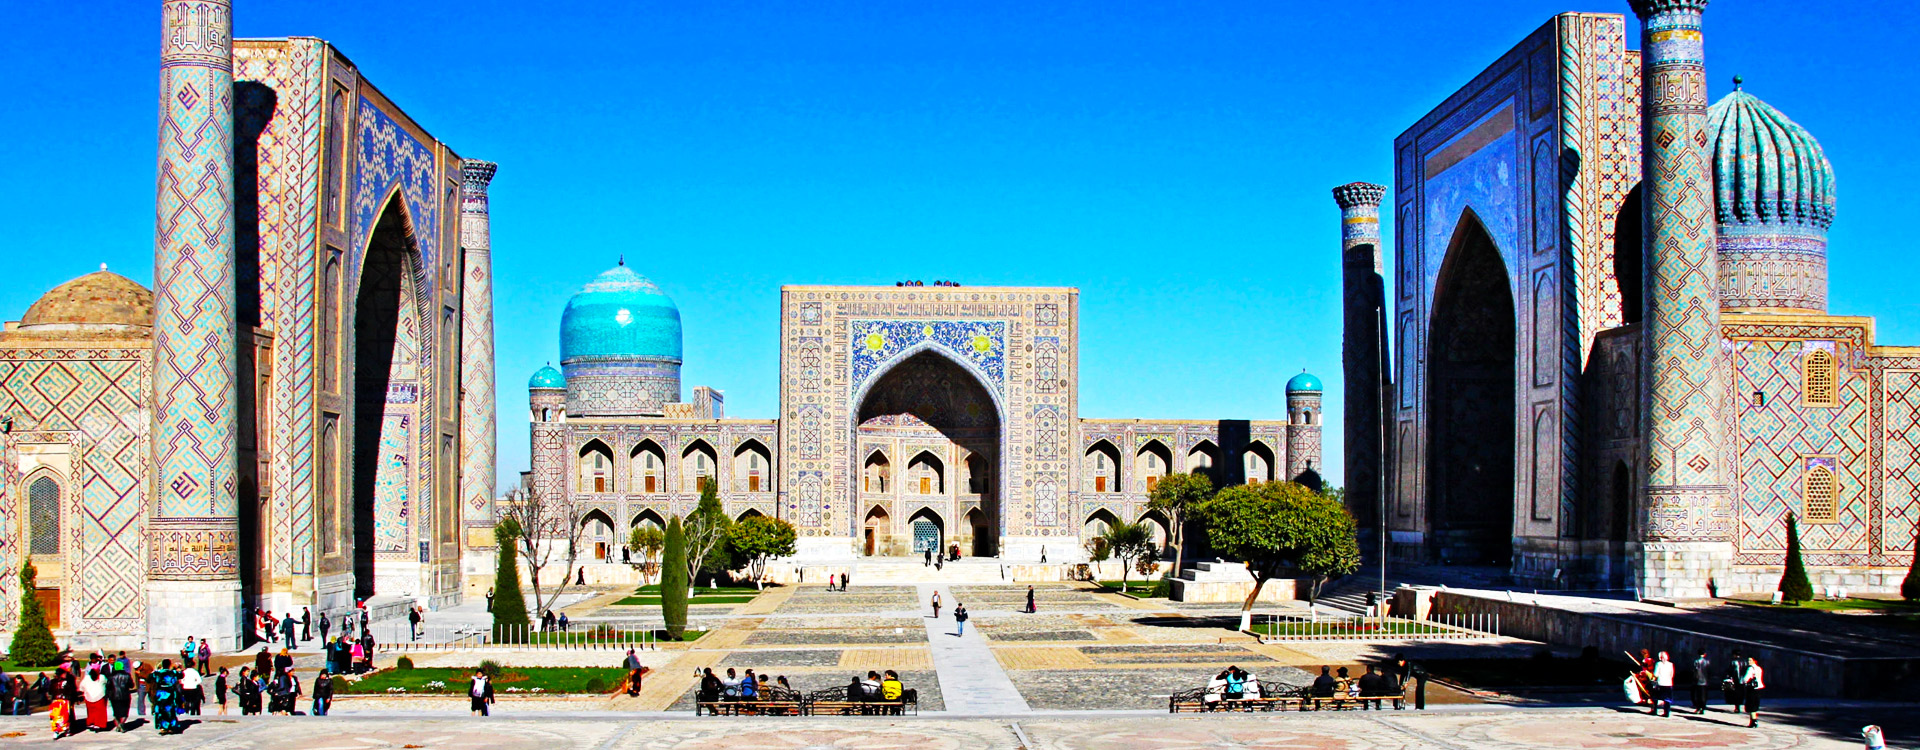 Uzbekistan In August